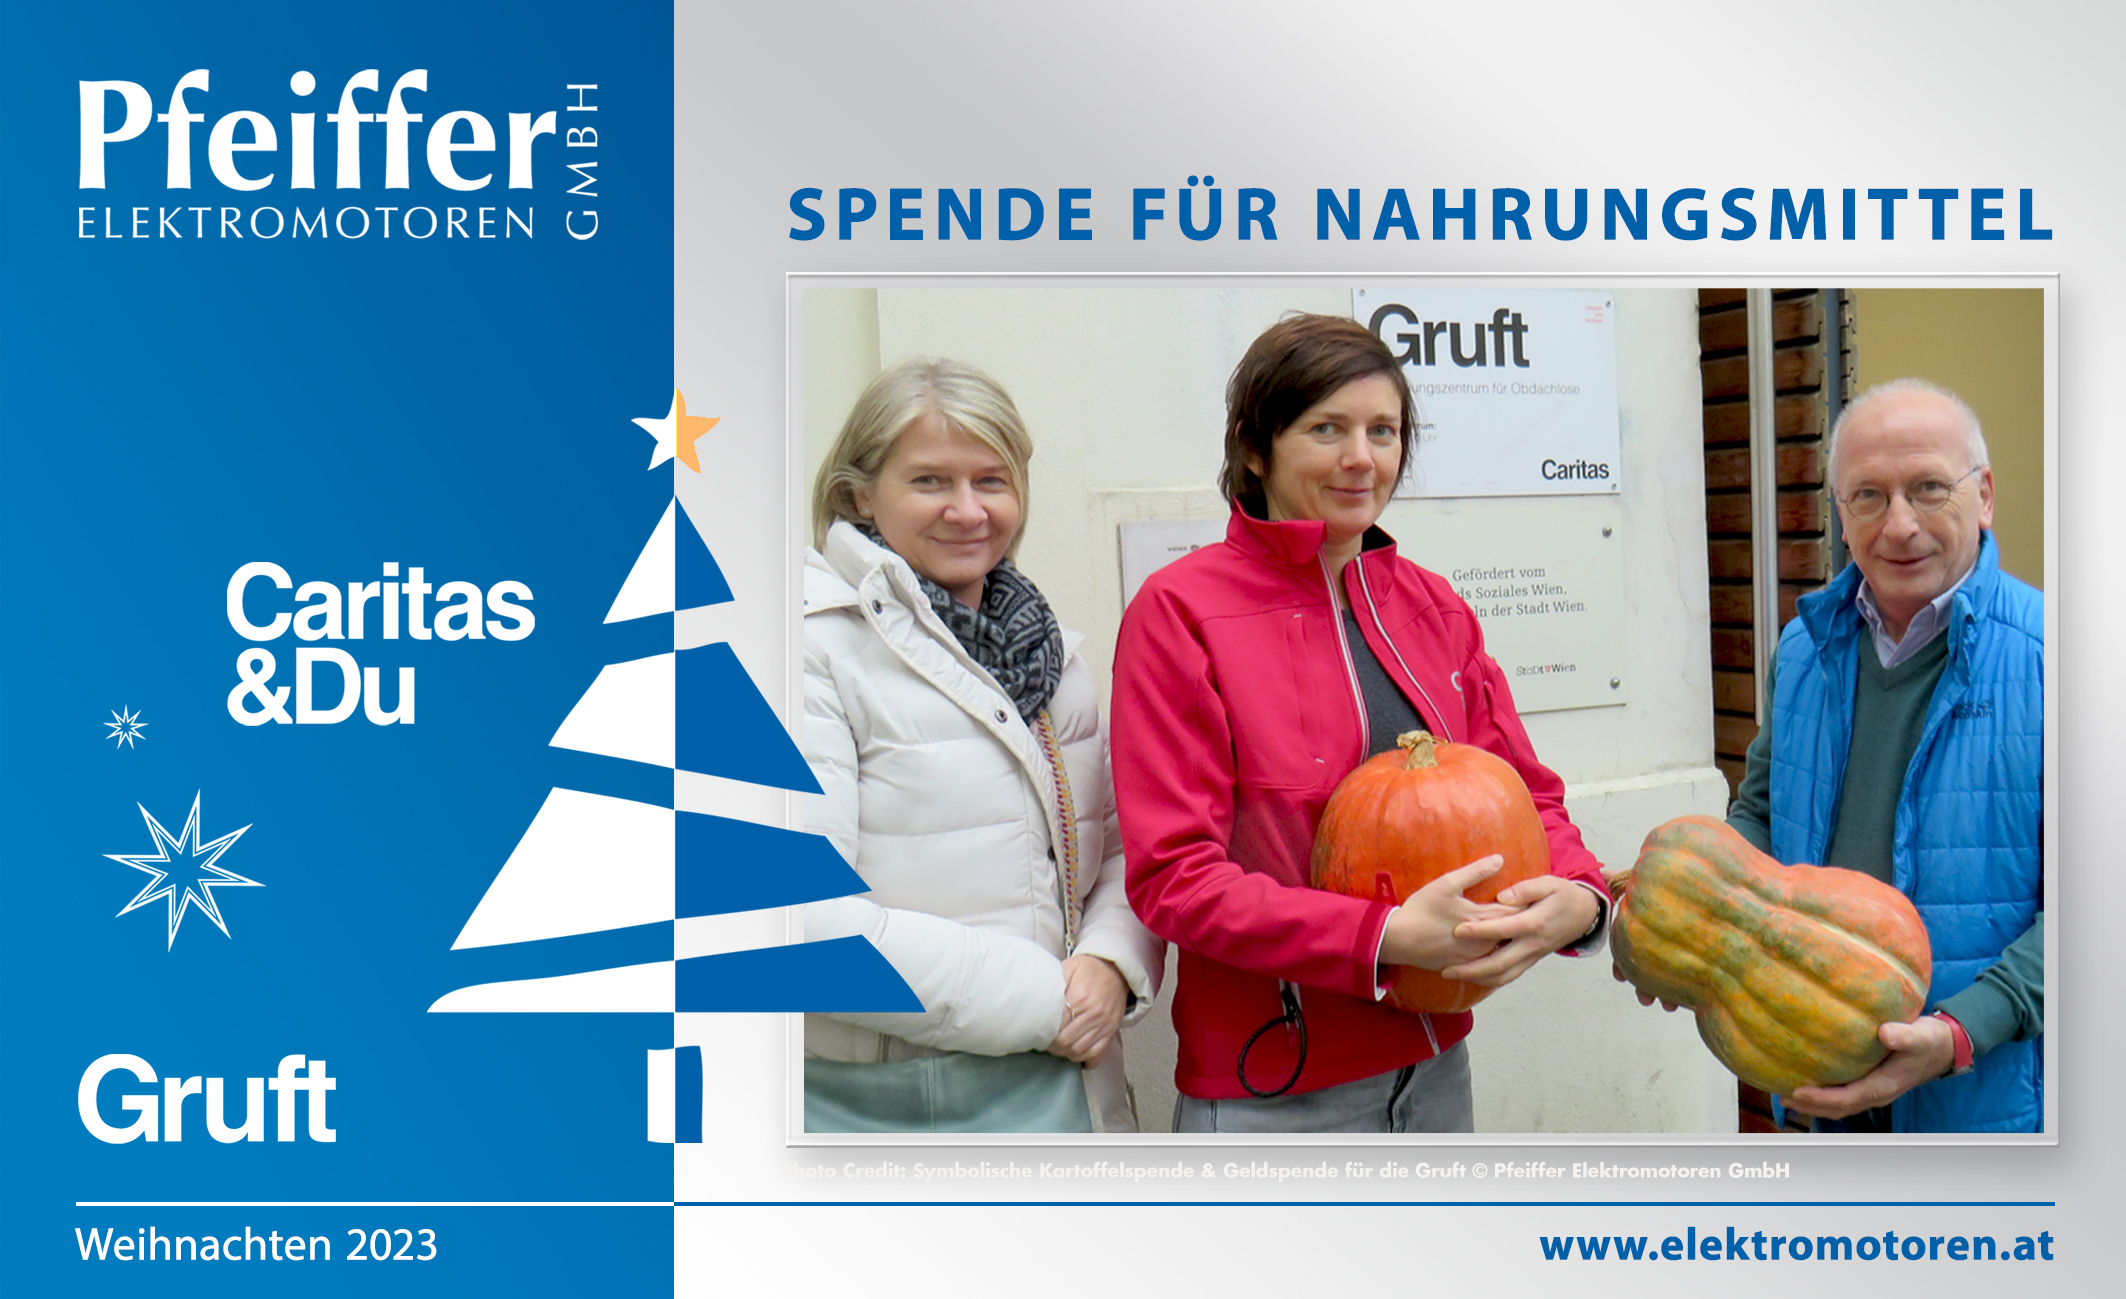 Abb.: Geldspende Winter 2023 für Nahrungsmittel an die Gruft (Caritas). Symbolische Übergabe von Kürbissen und Kartoffelsäcken.